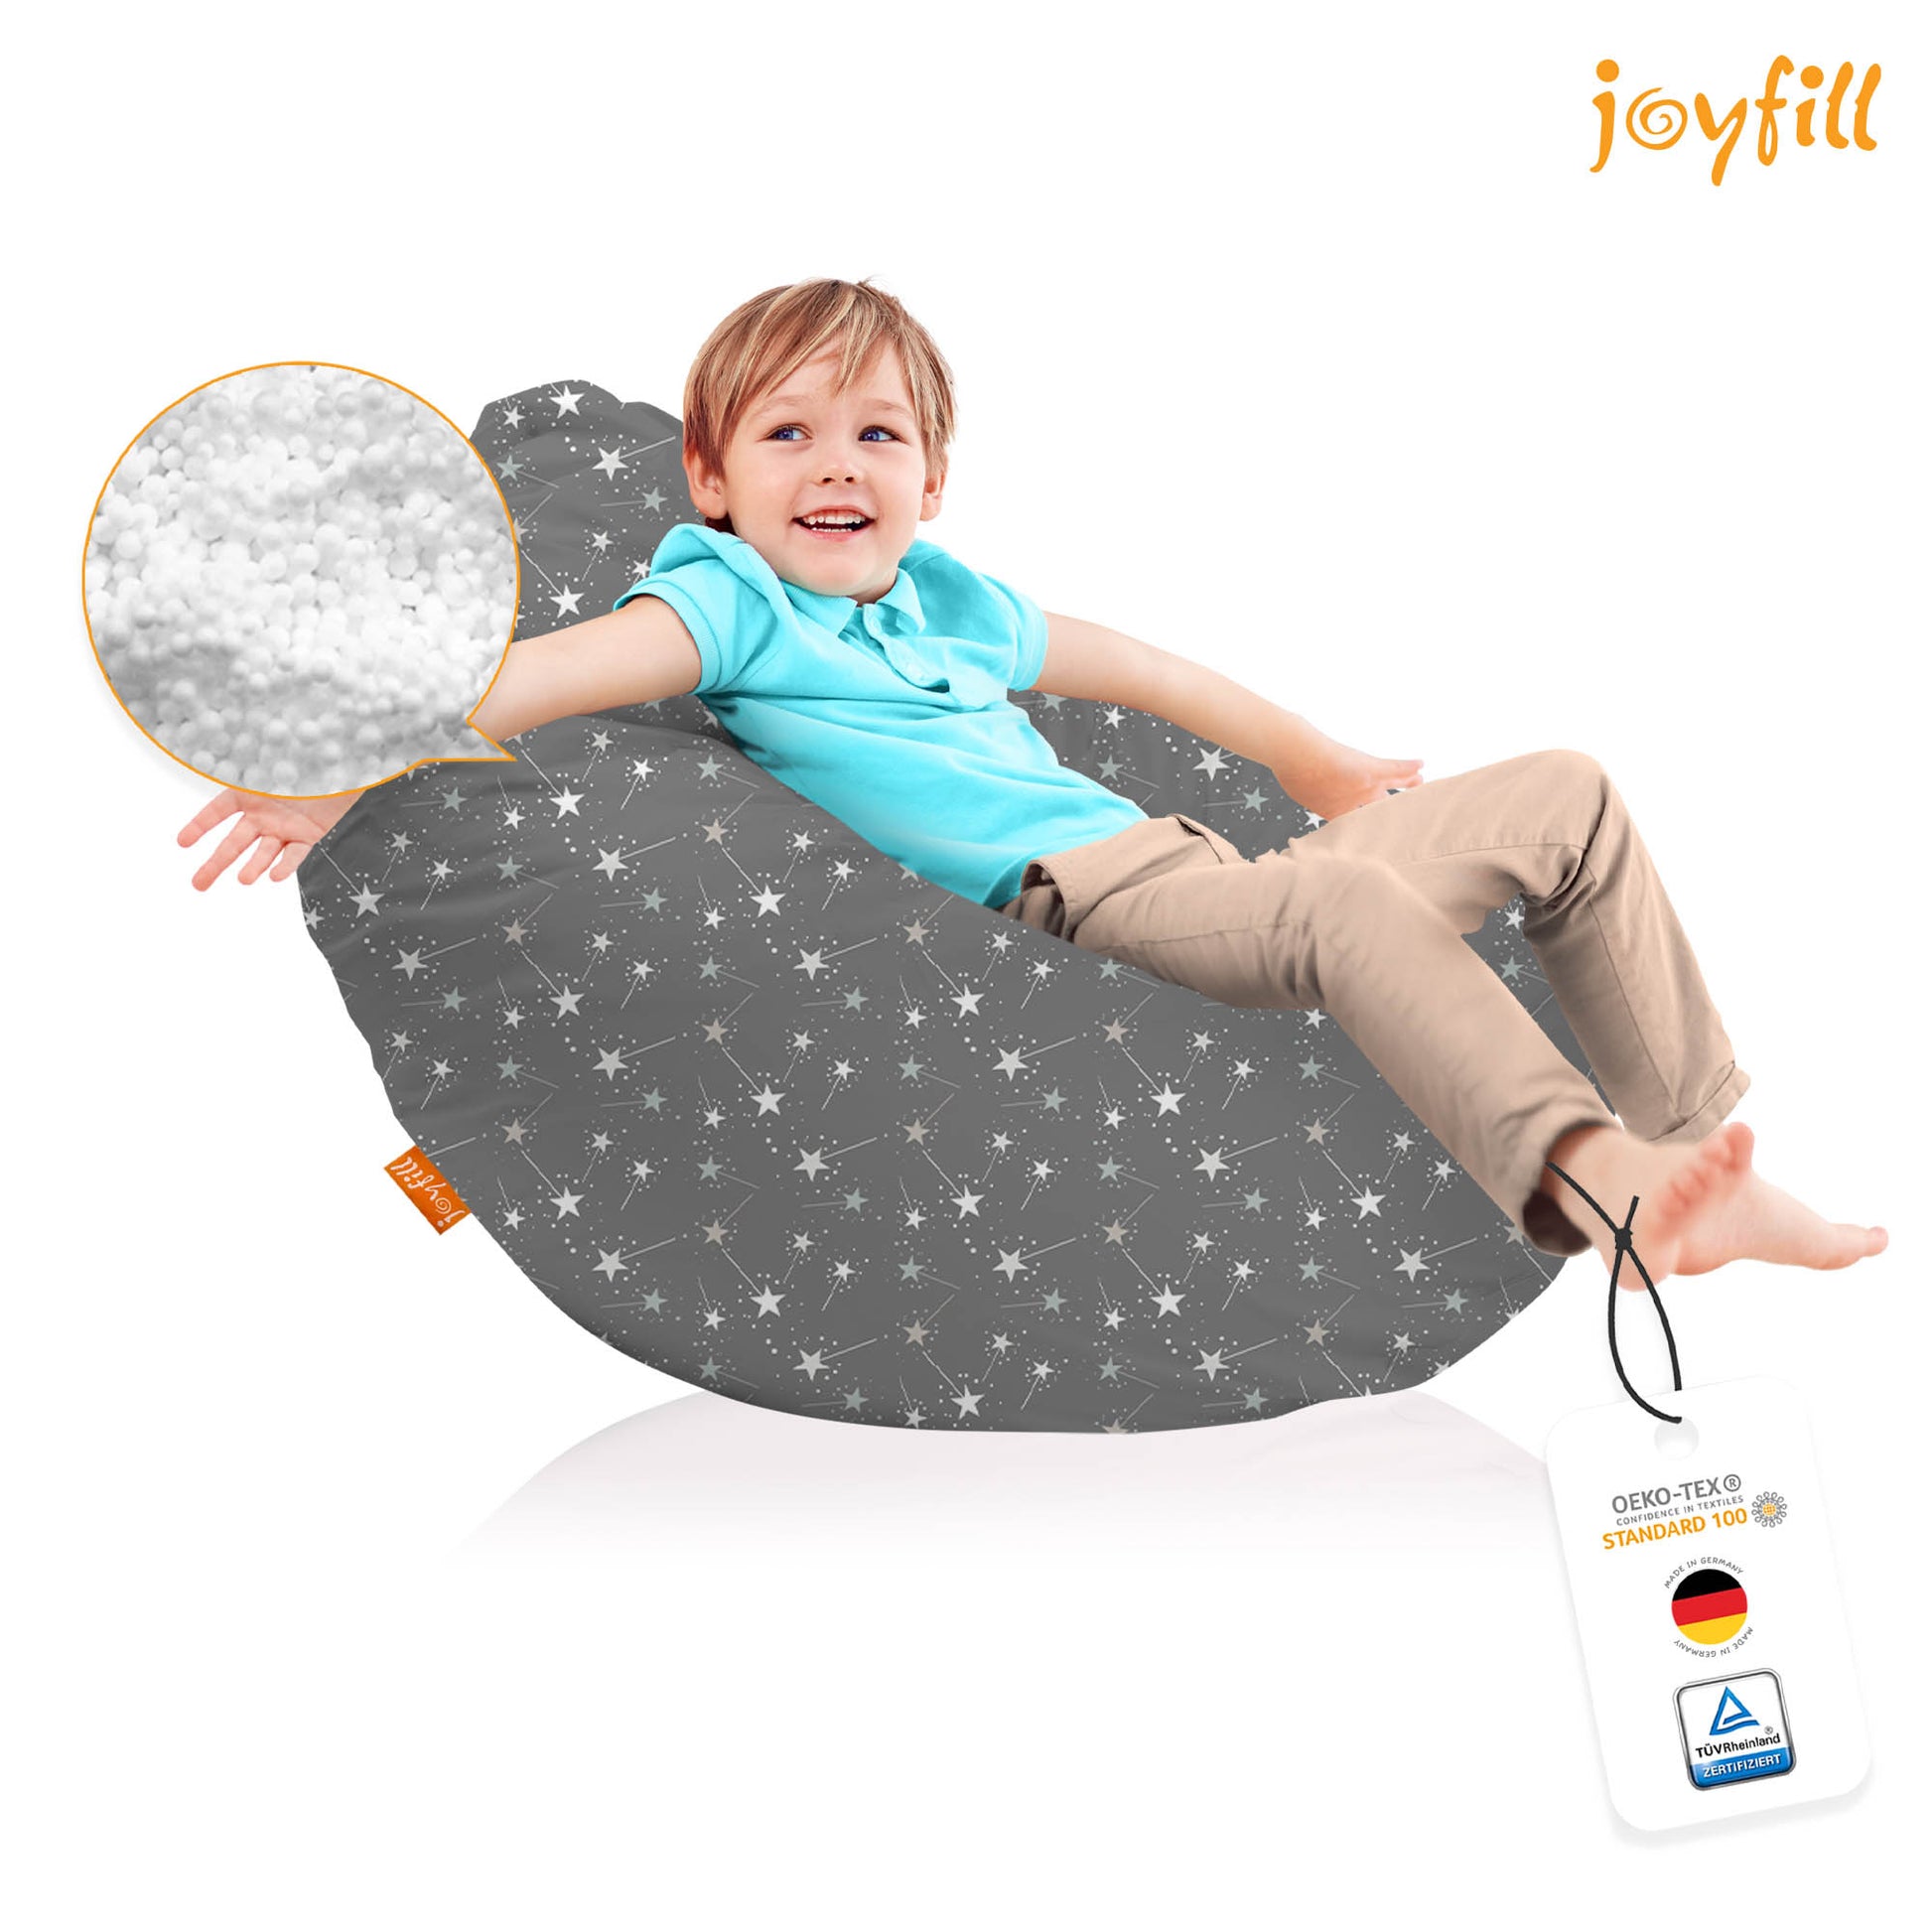 Joyfill Sitzsack mit Bezug, Stuhl für Kinder und Erwachsene | Buy Online